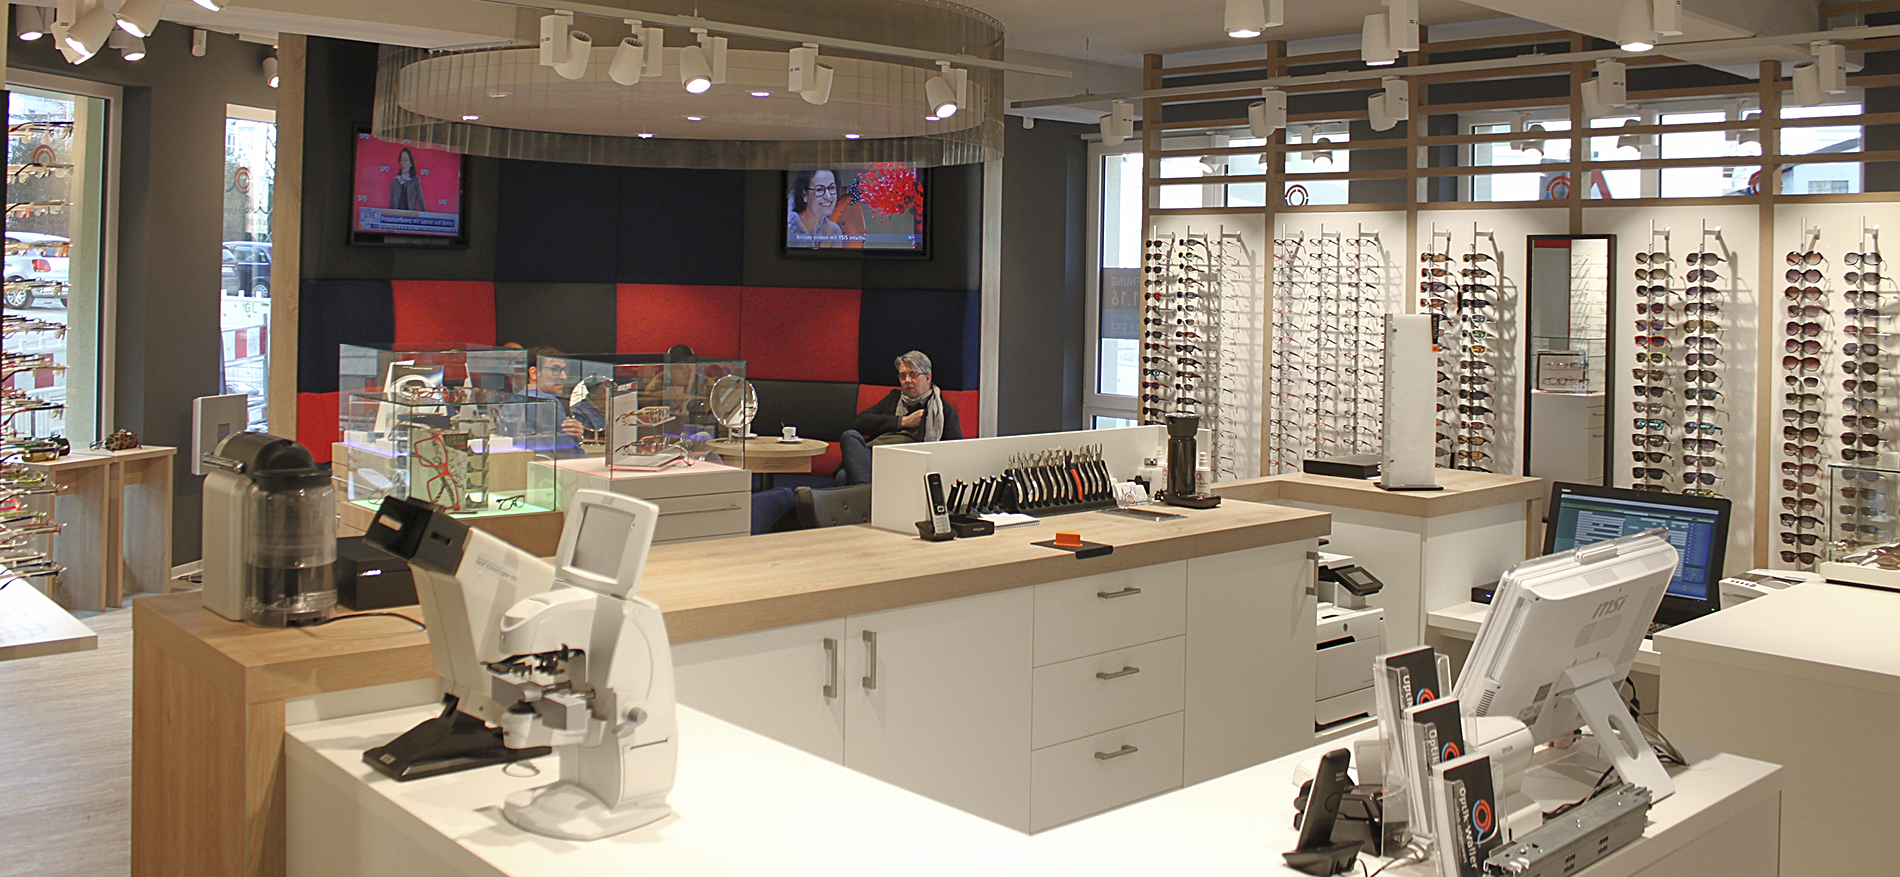 Waller Optik – Hofheim (DE): Ladeneinrichtung Augenoptik - 